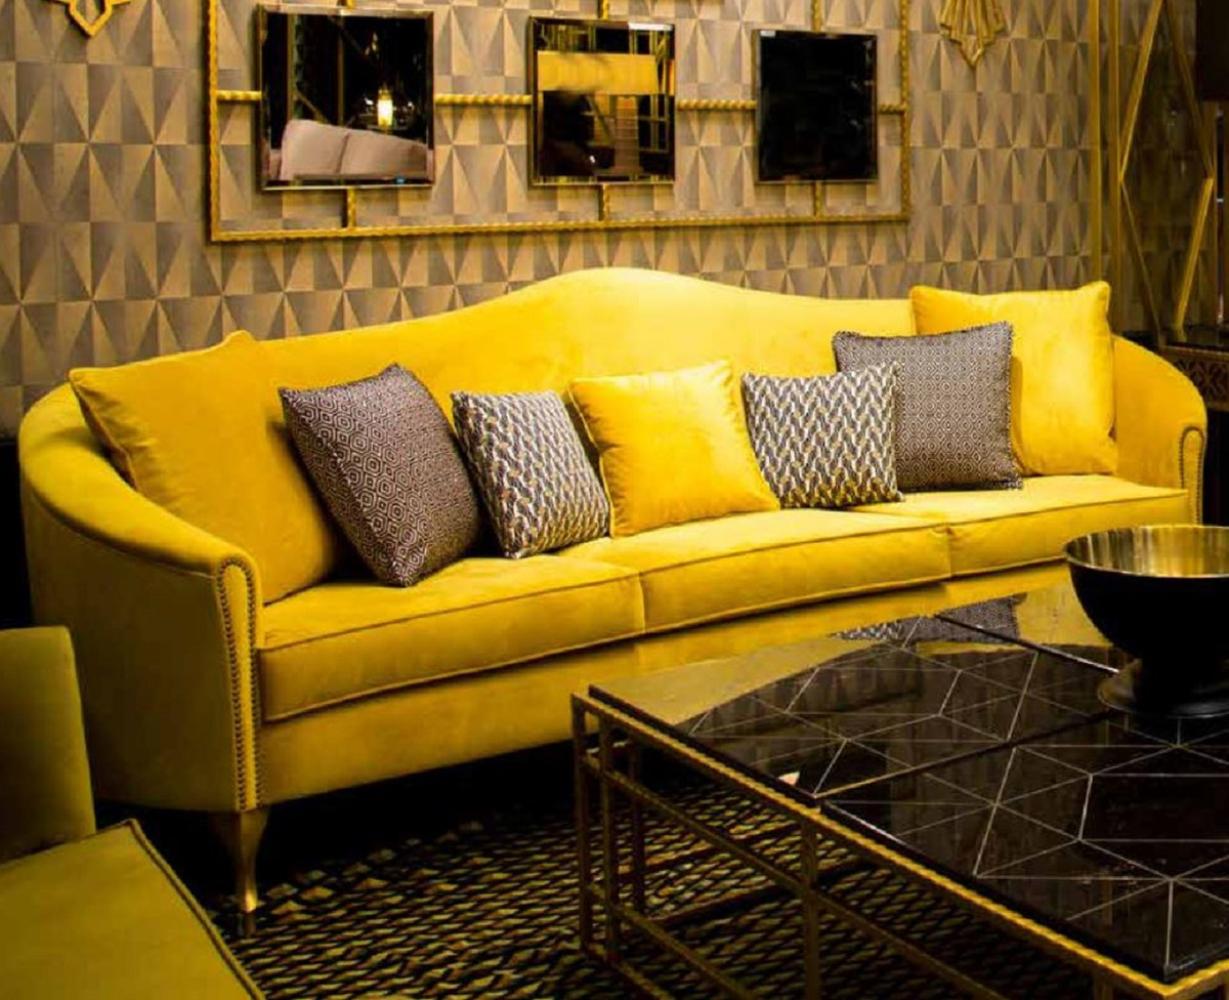 Casa Padrino Luxus Barock Samt Sofa Gelb / Gold 280 x 90 x H. 100 cm - Edles Wohnzimmer Sofa mit dekorativen Kissen - Barock Wohnzimmer Möbel - Luxus Qualität Bild 1